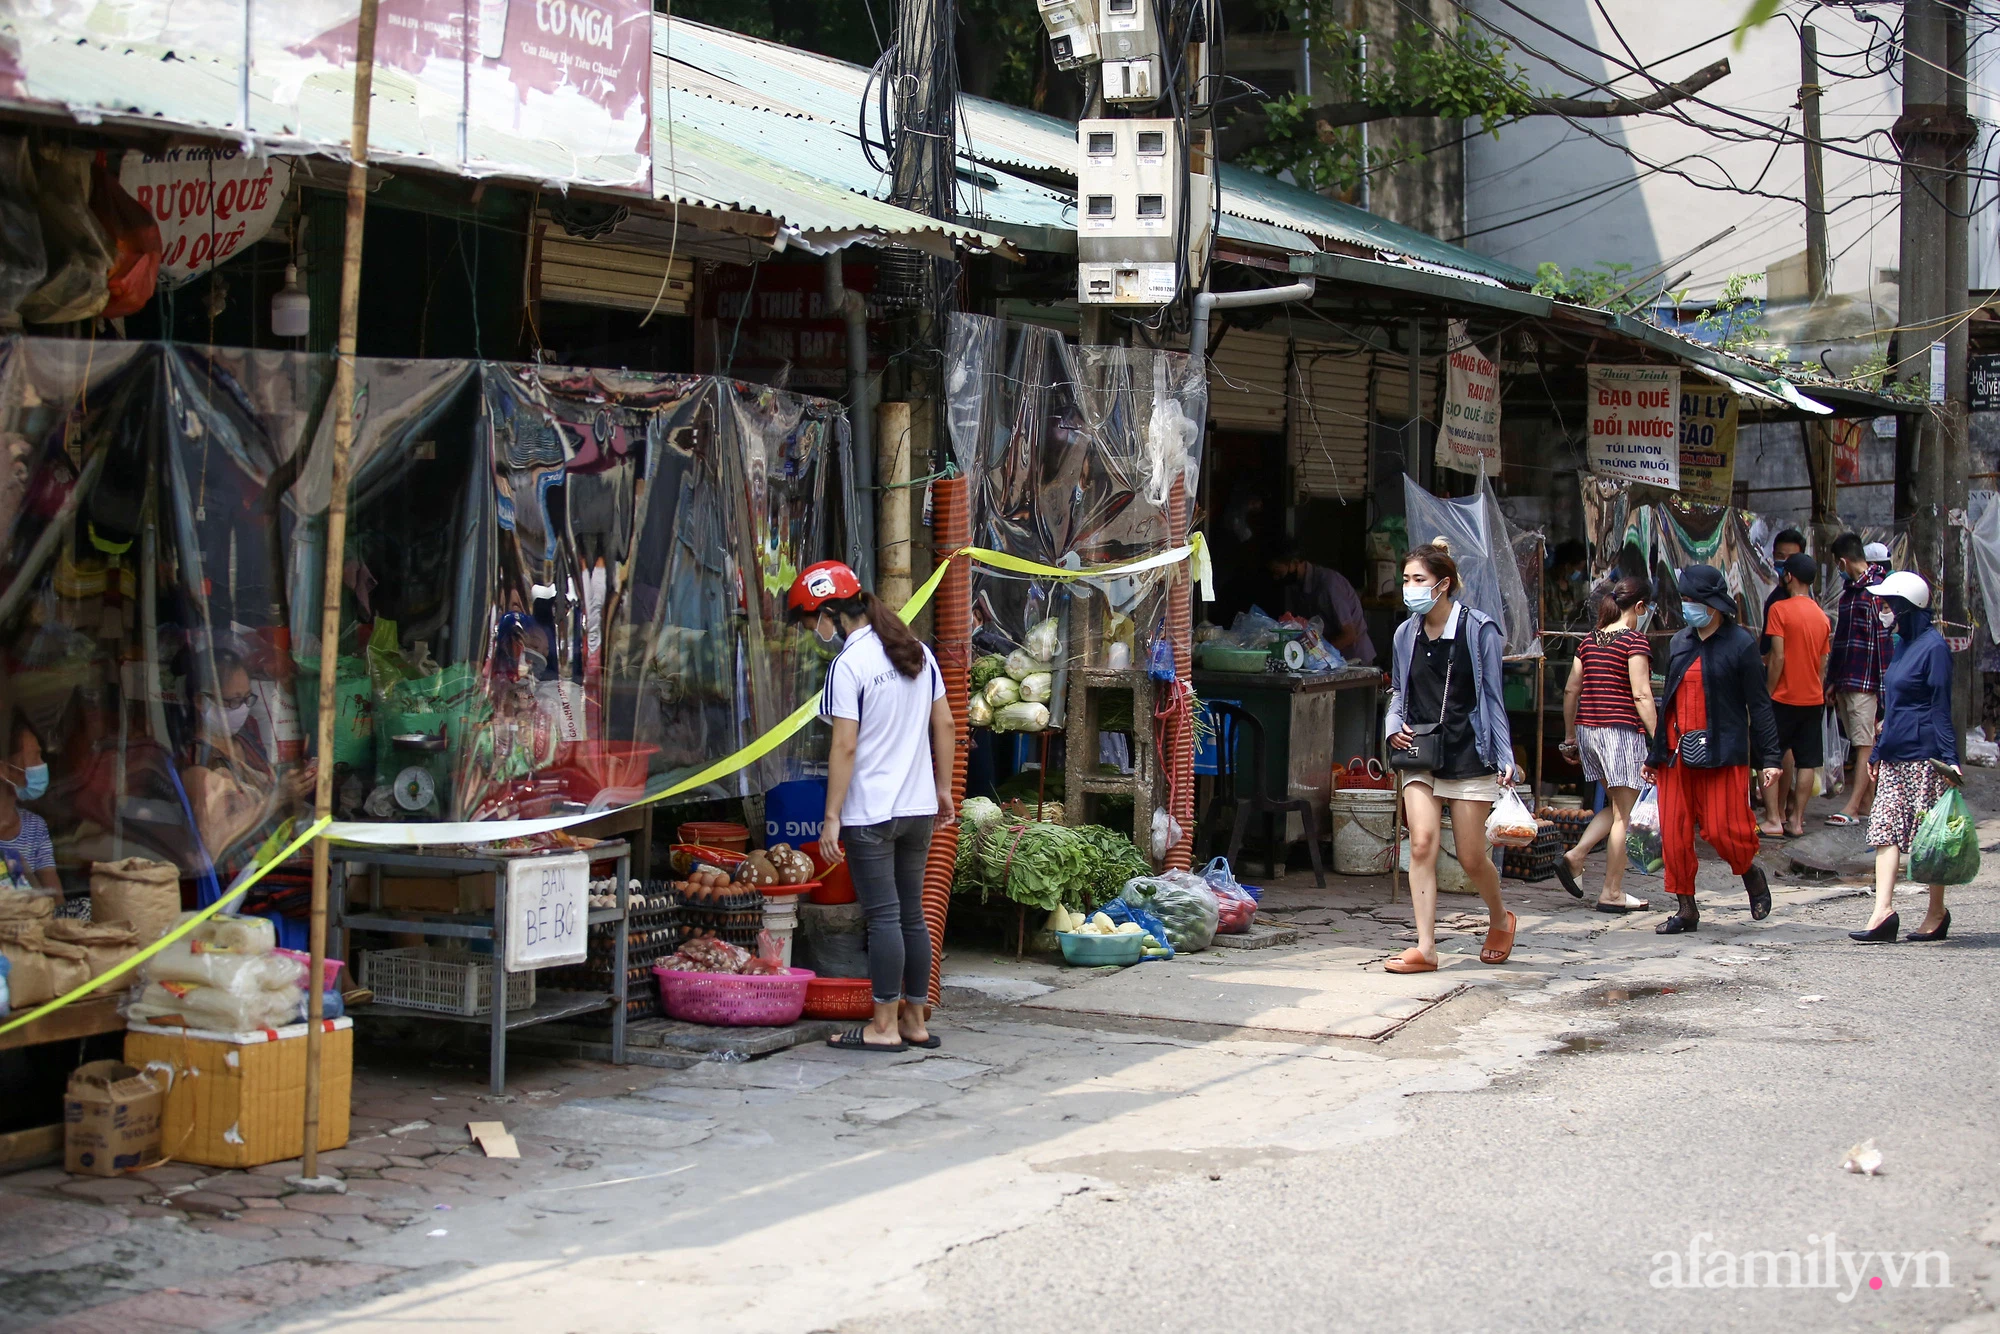 Ấn tượng với khu chợ dân sinh đầu tiên ở Hà Nội quây tấm nilon phòng dịch COVID-19, tiểu thương chia ca đứng bán theo ngày chẵn, lẻ - Ảnh 2.